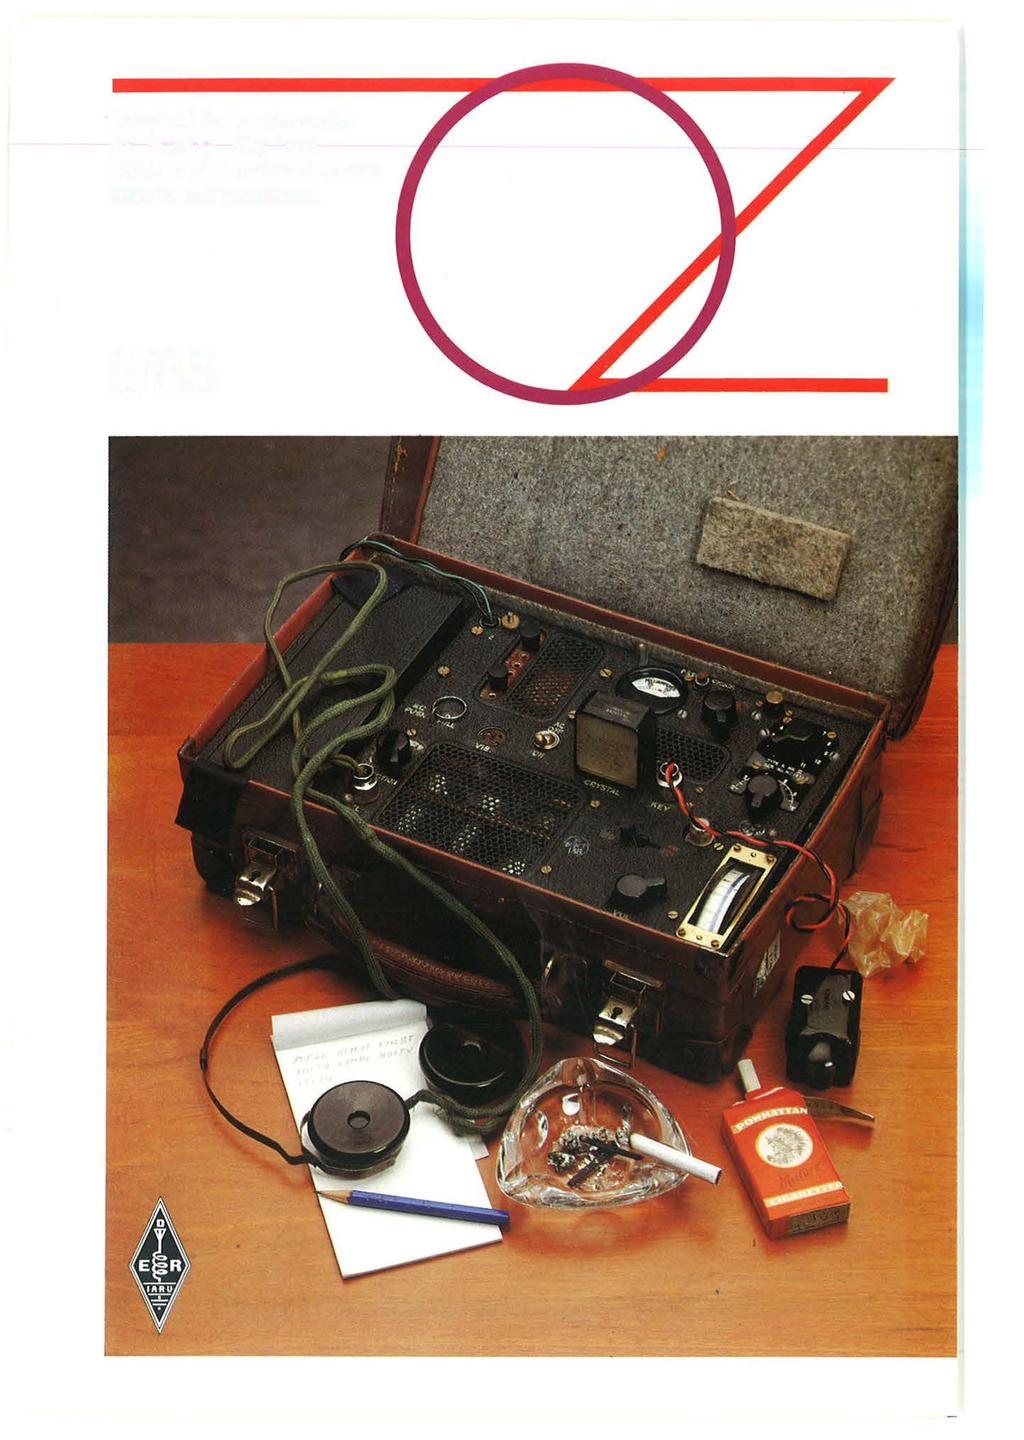 Tidsskrift for amatør-radio. 57. årgang. Maj 1985 Udgivet af  experimenterende danske radioamatører. 5/85 - PDF Gratis download